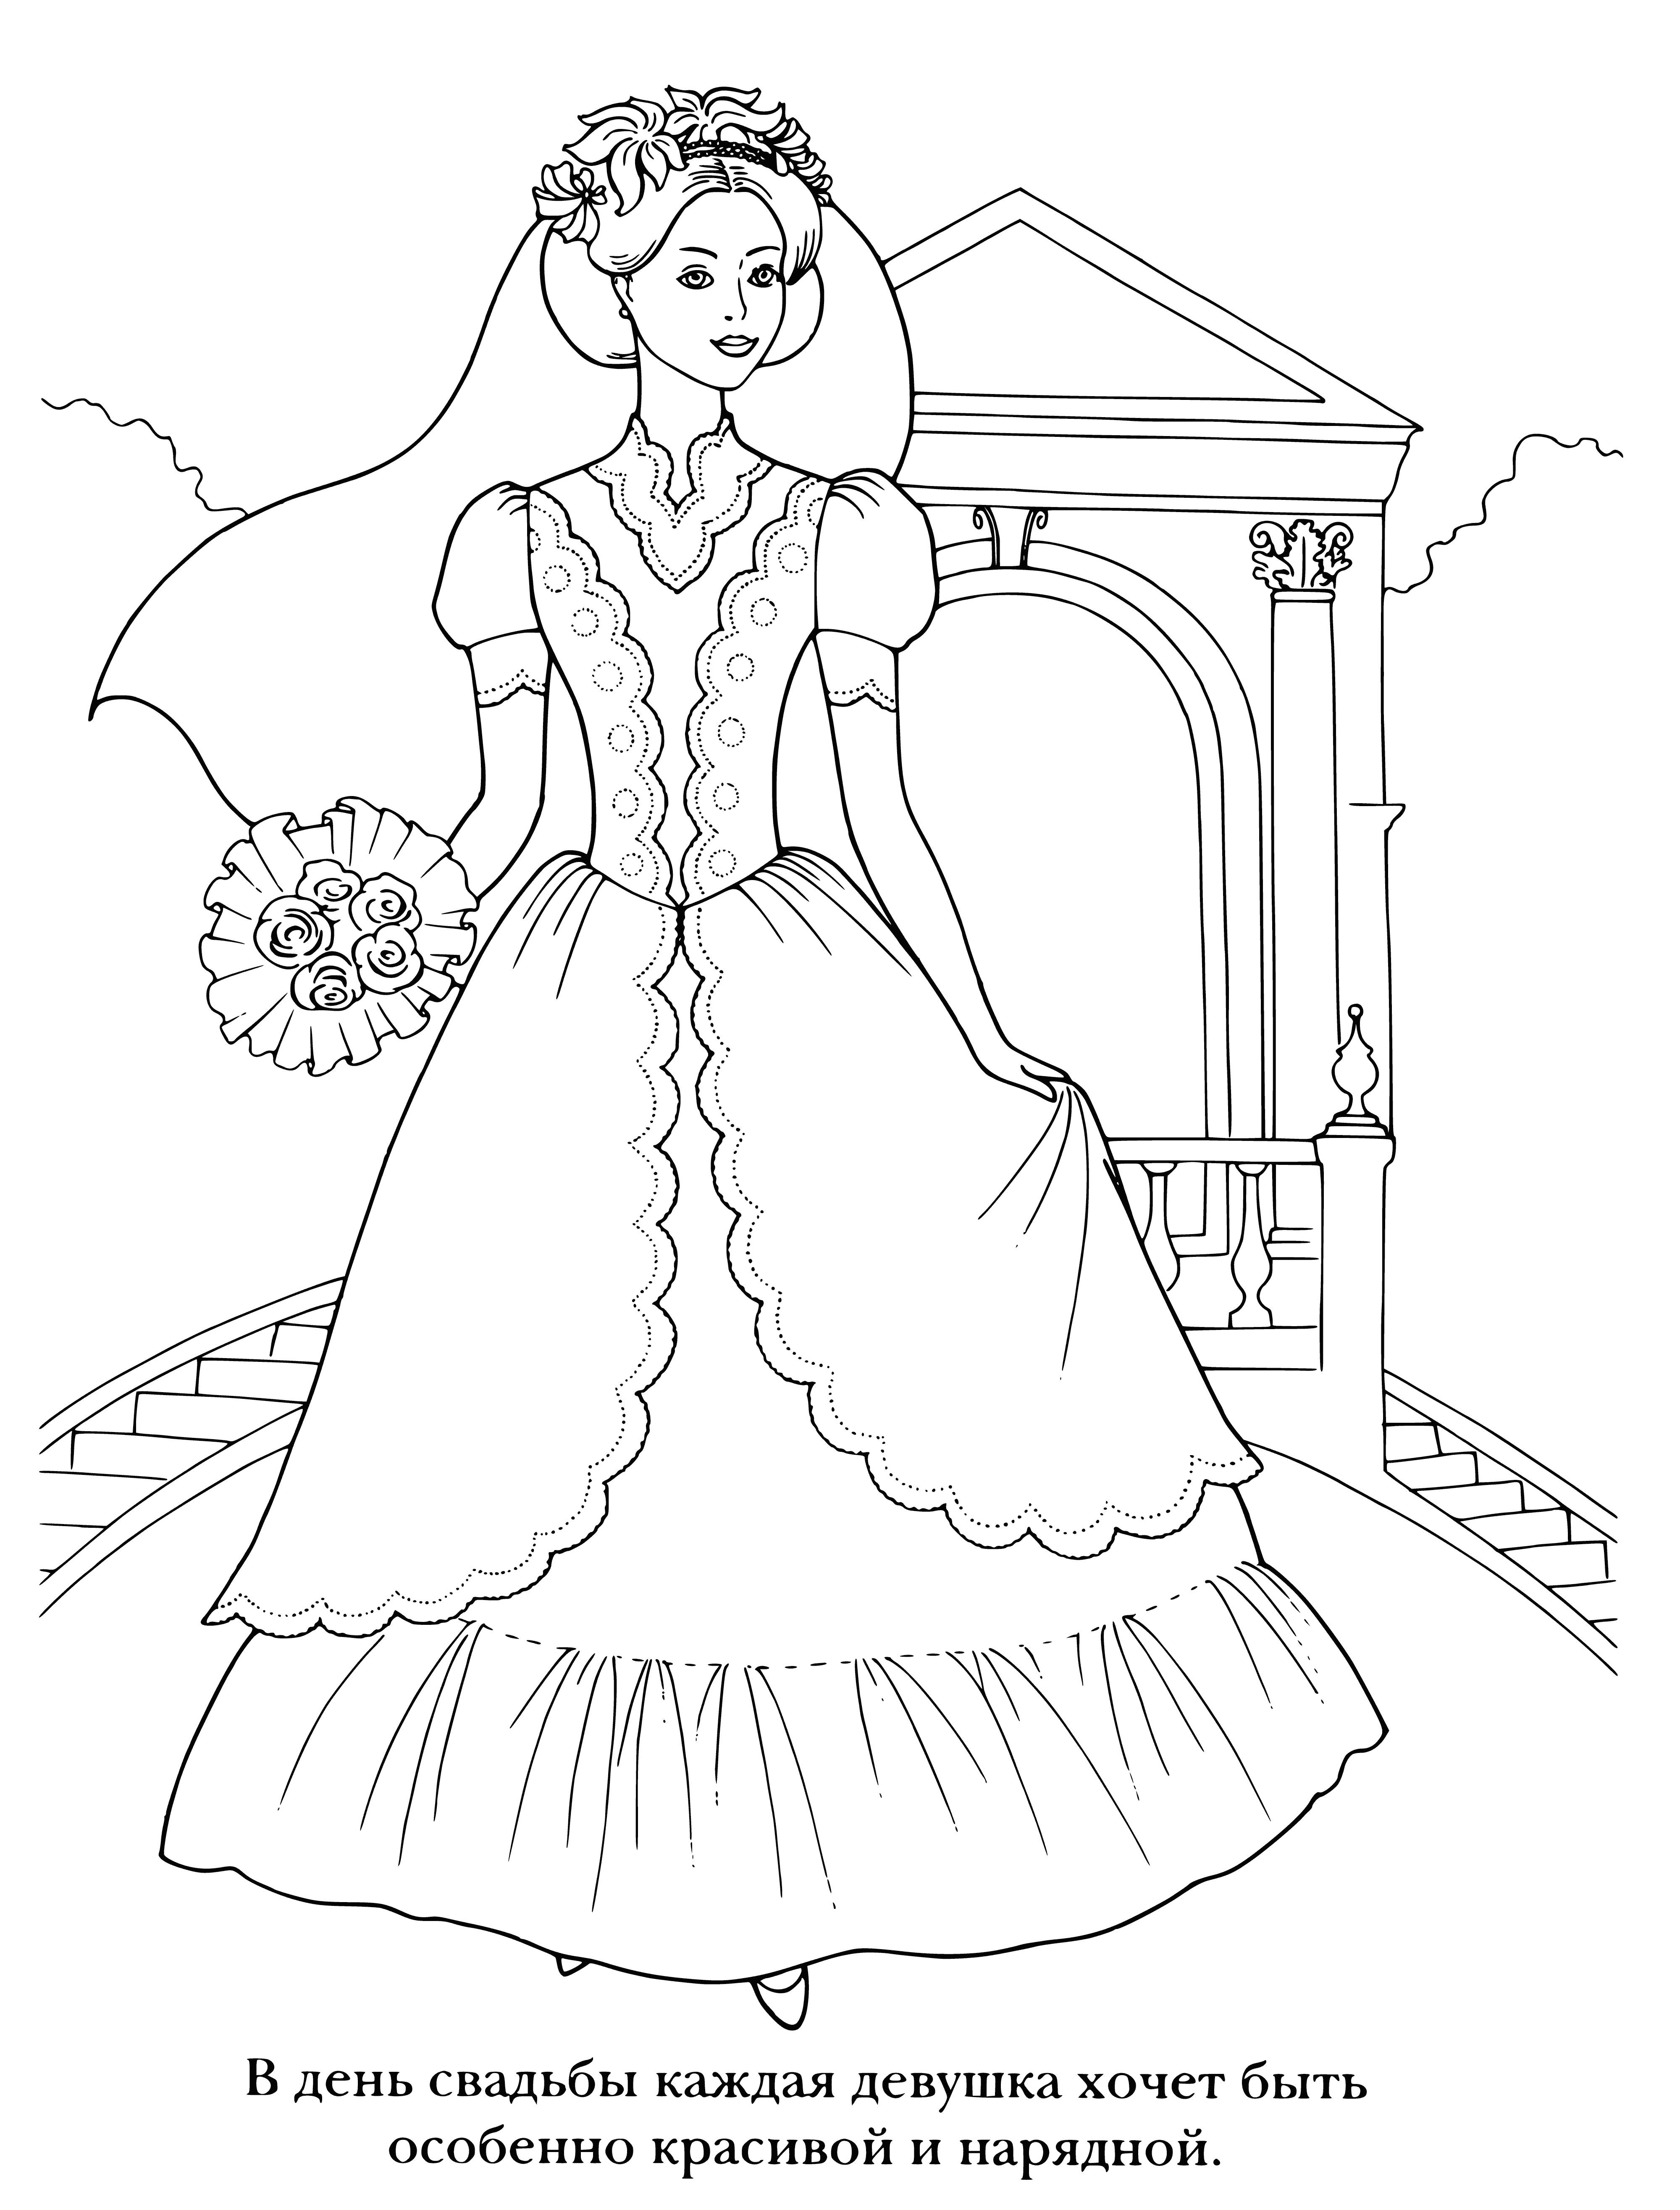 Bridal bouquet coloring page